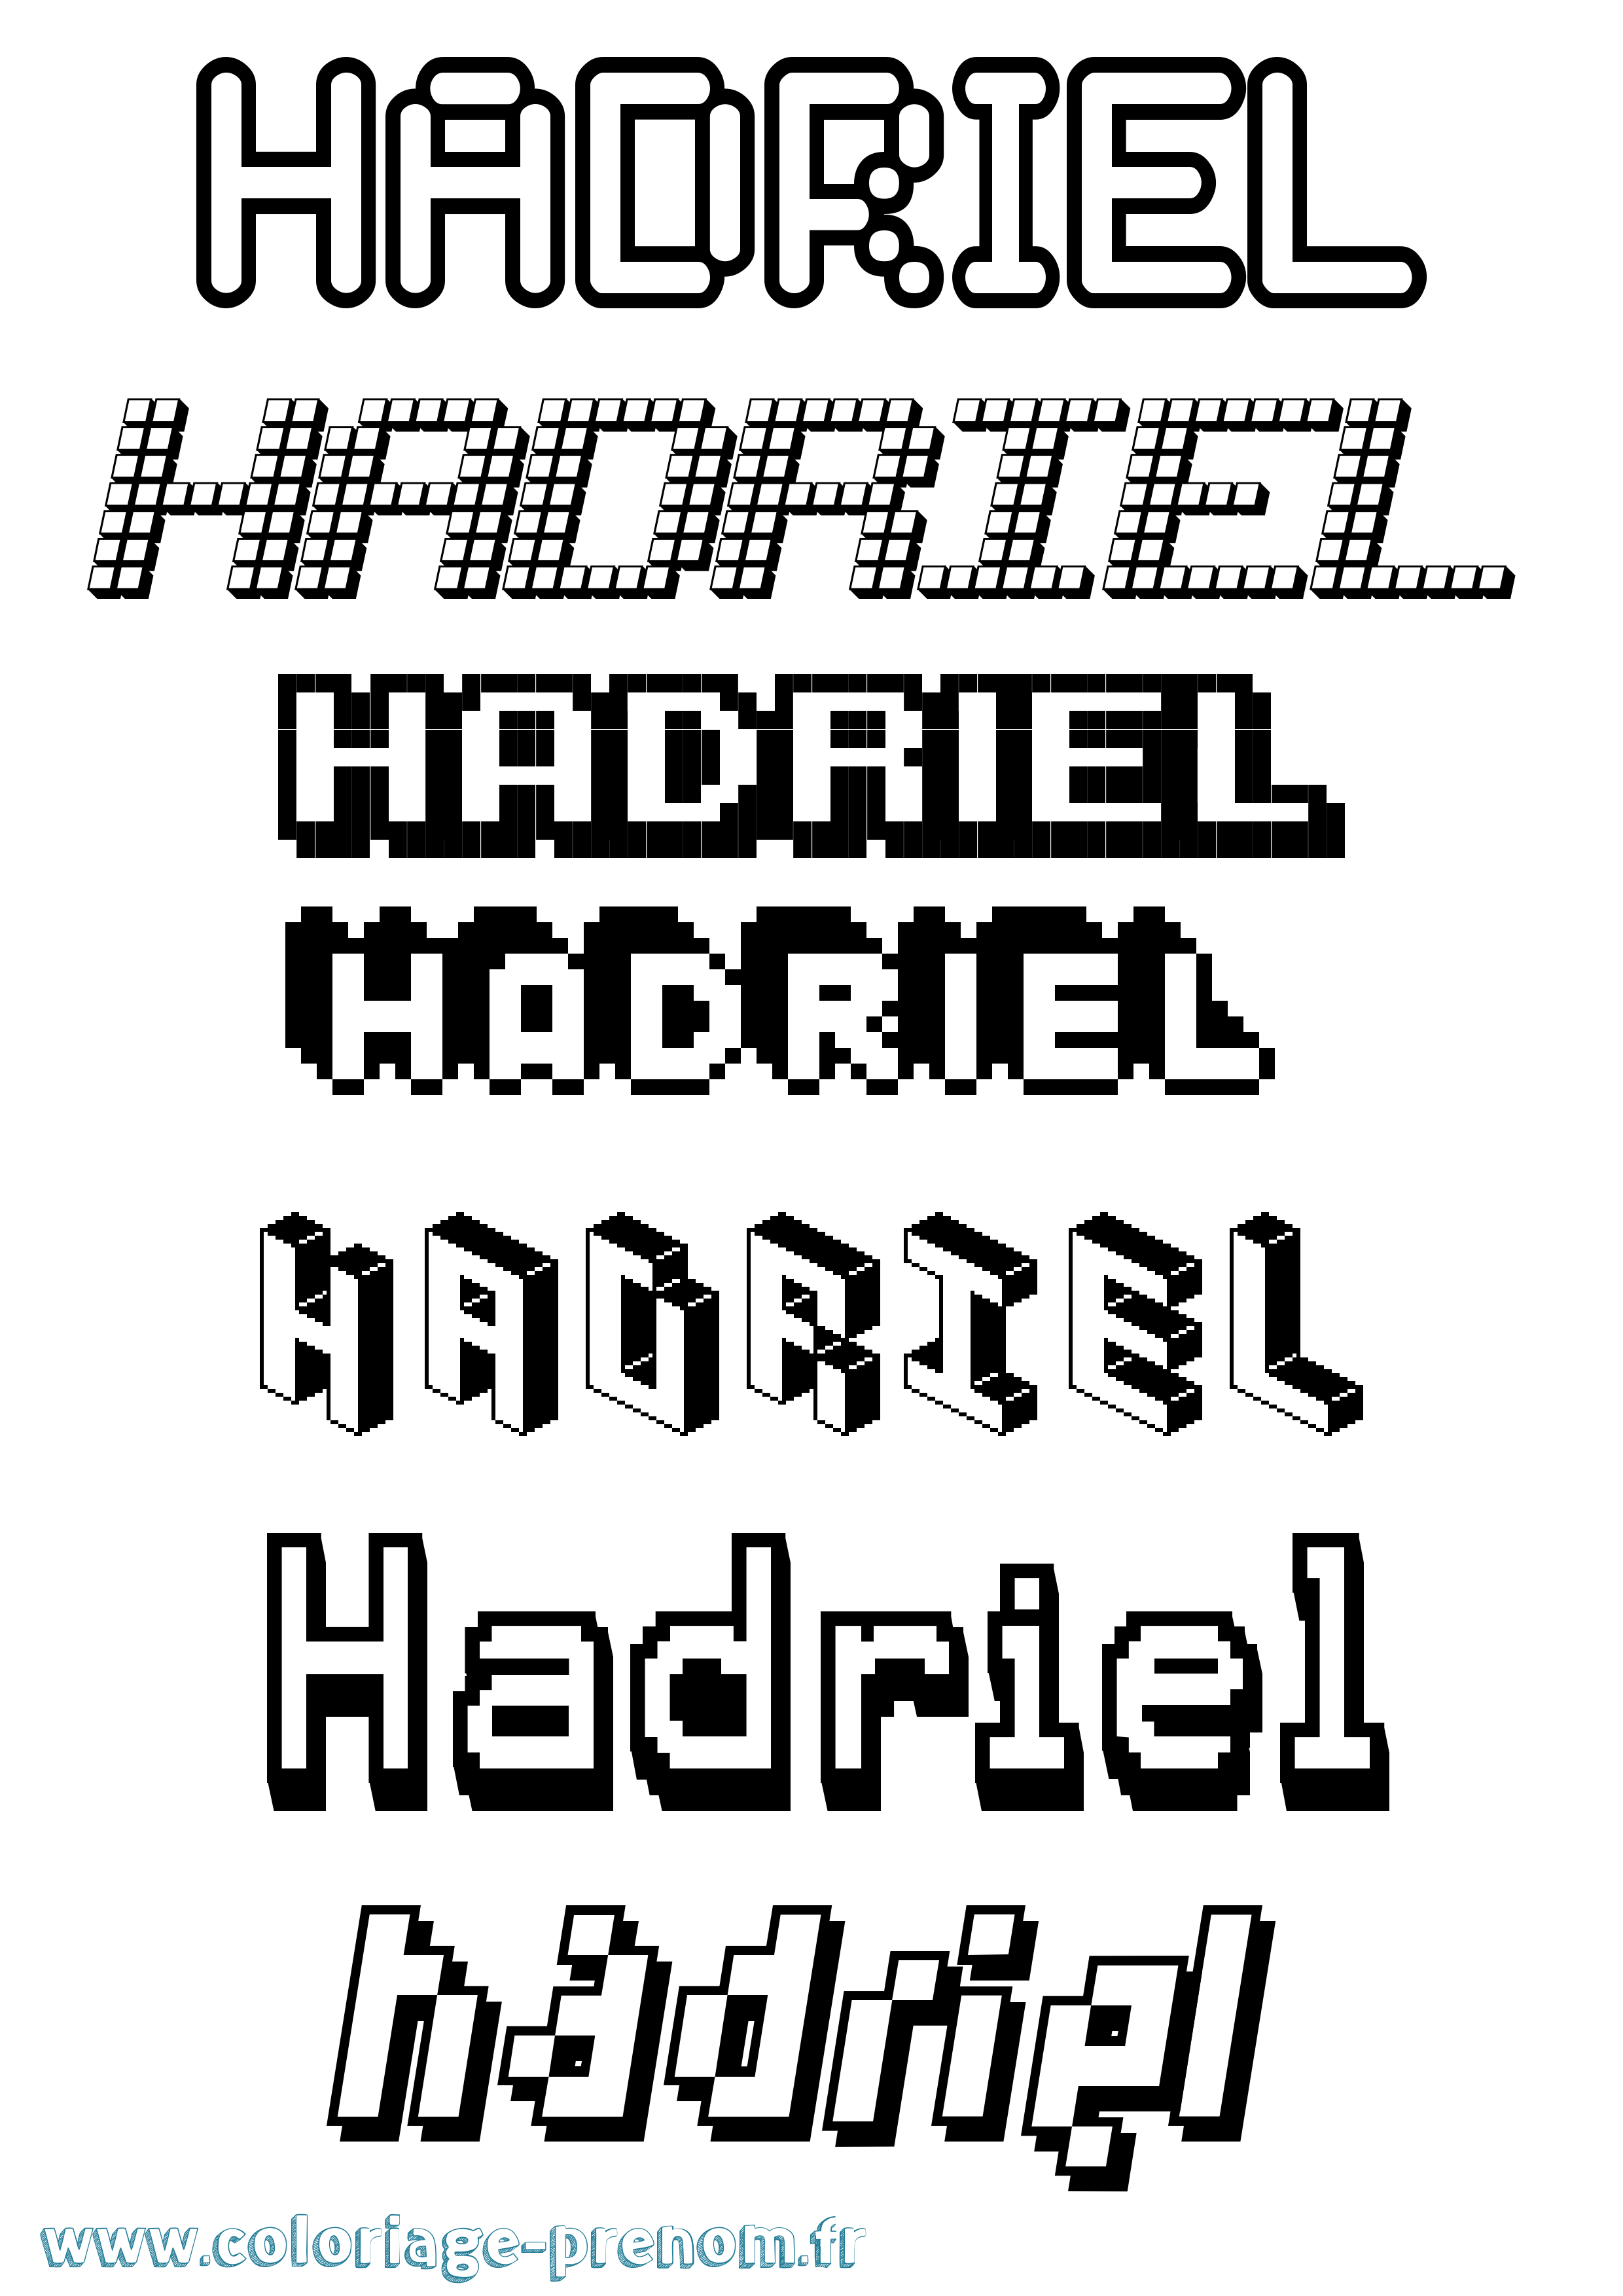 Coloriage prénom Hadriel